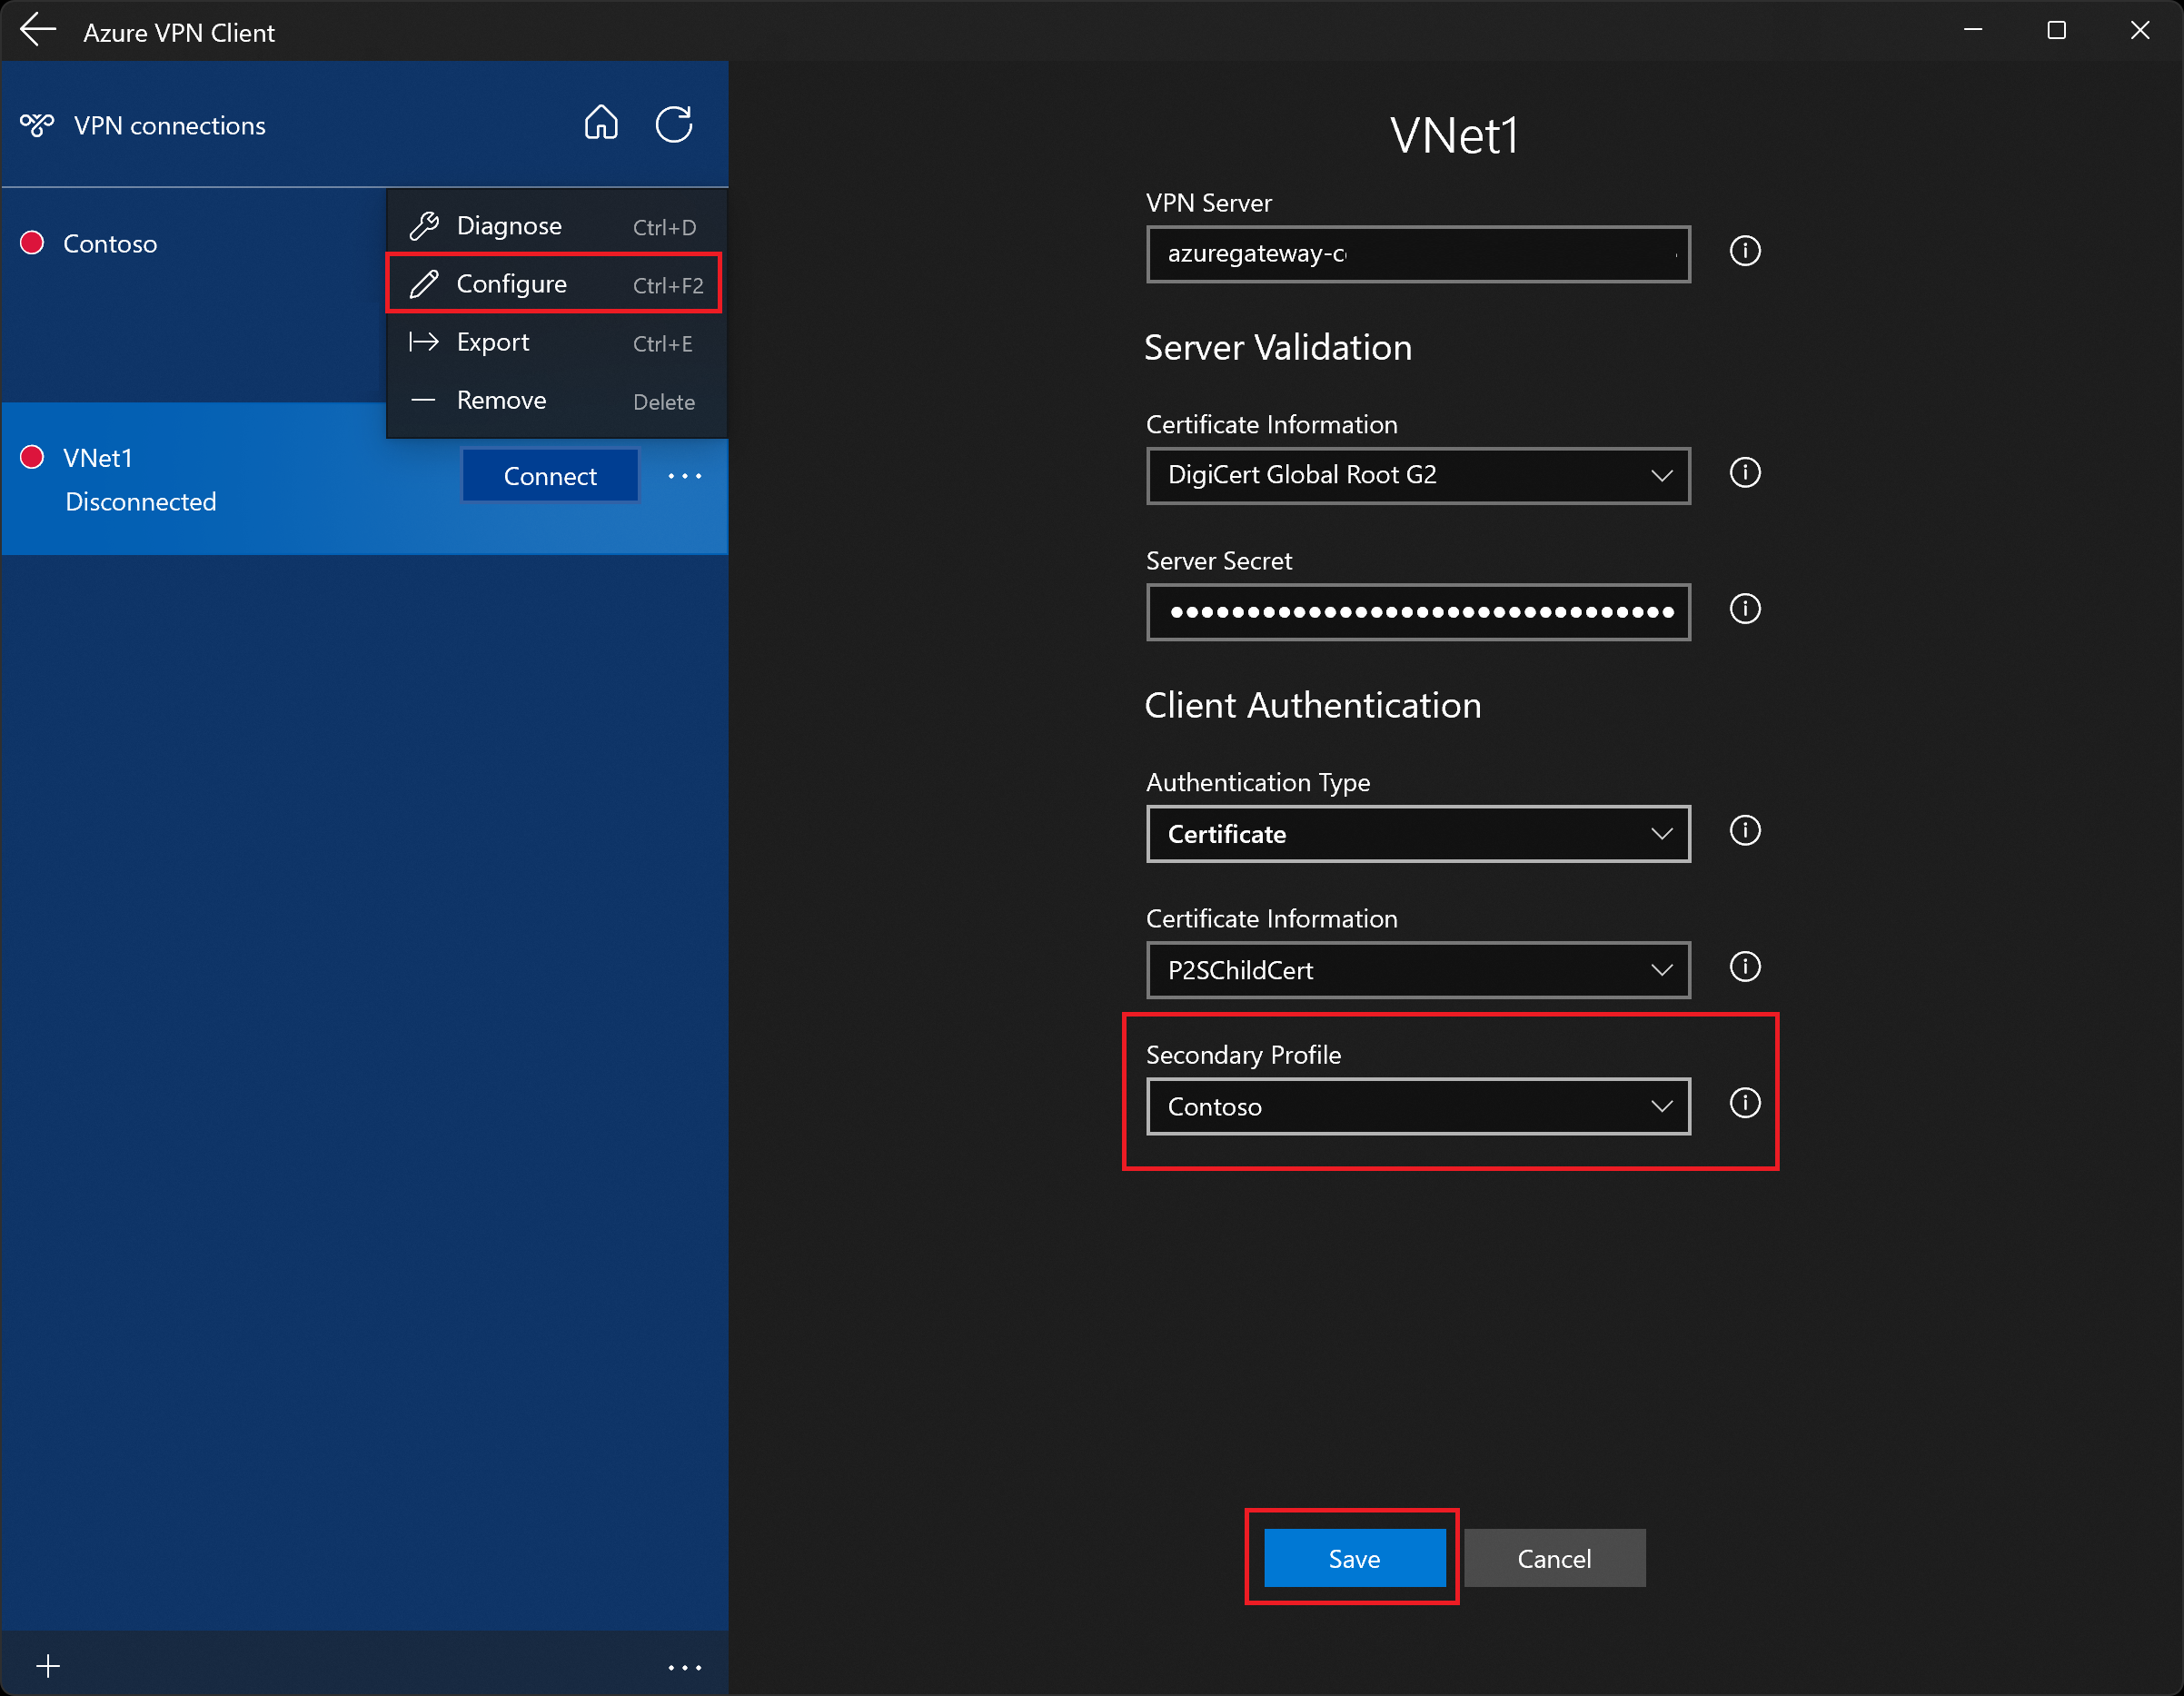 Capture d’écran montrant la page de configuration de profil Azure VPN Client.